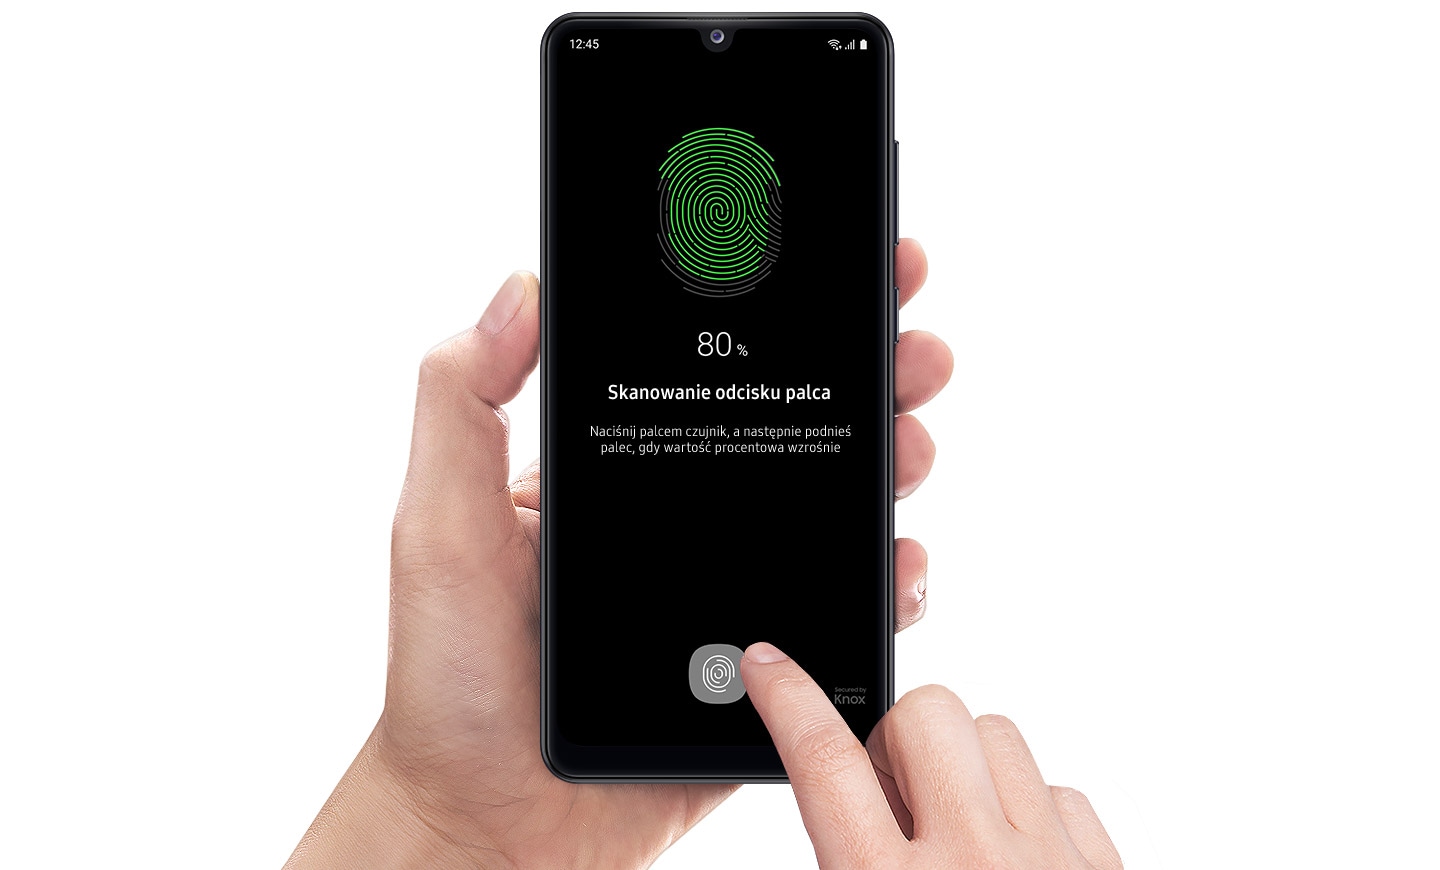 Skaner odcisku palca metodą autoryzacji w nowym Galaxy A31 marki Samsung. Dzięki temu rozwiązaniu, wszystkie Twoje dane będą bardzo bezpieczne!